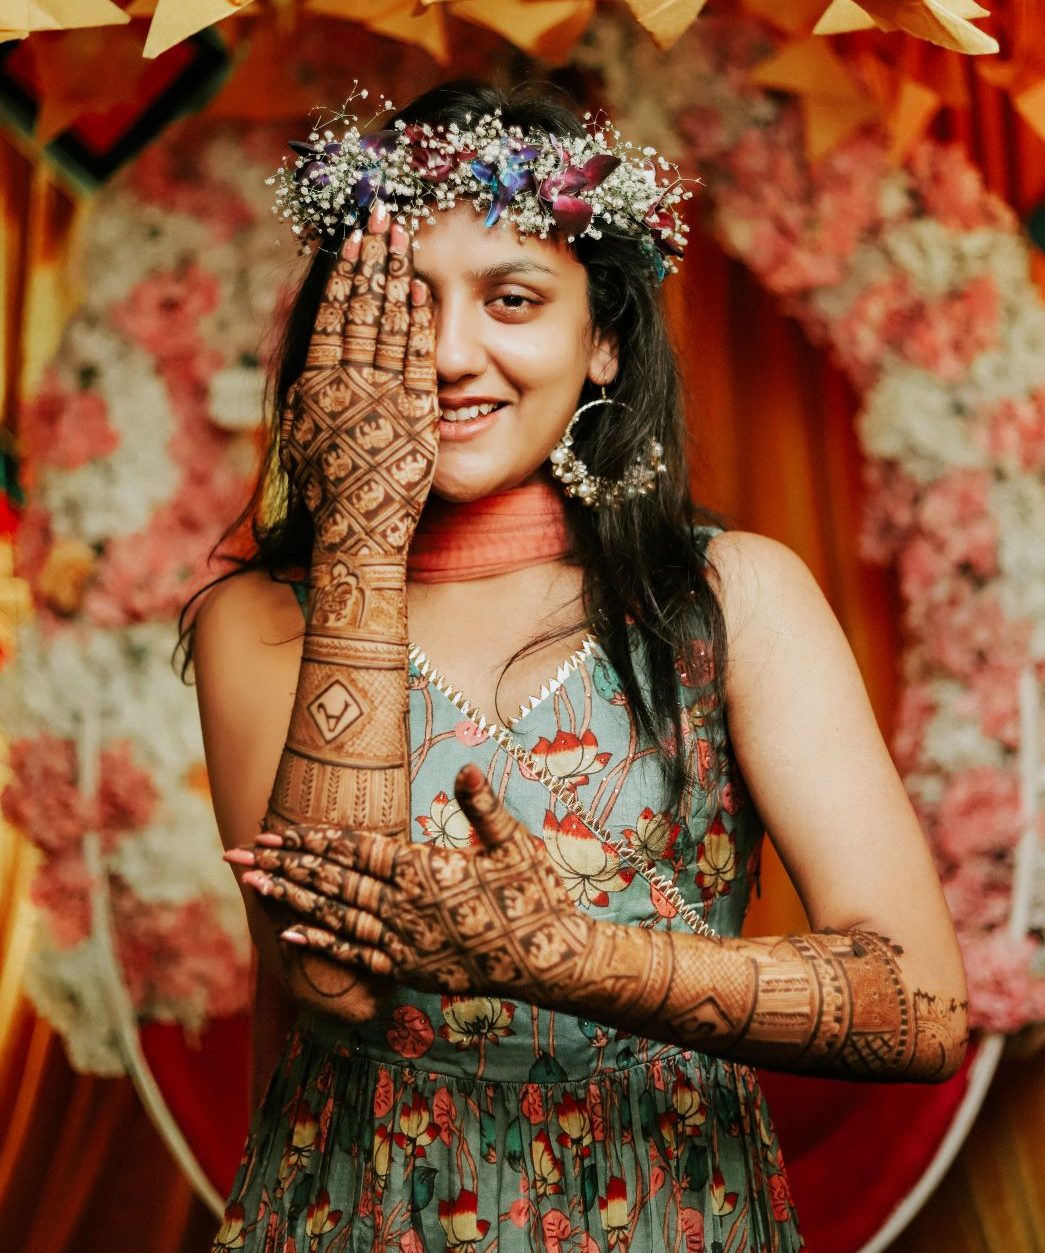 Best Mehndi Ceremony Photoshoot Poses idea for Bridal |Mehndi function  photoshoot - YouTube